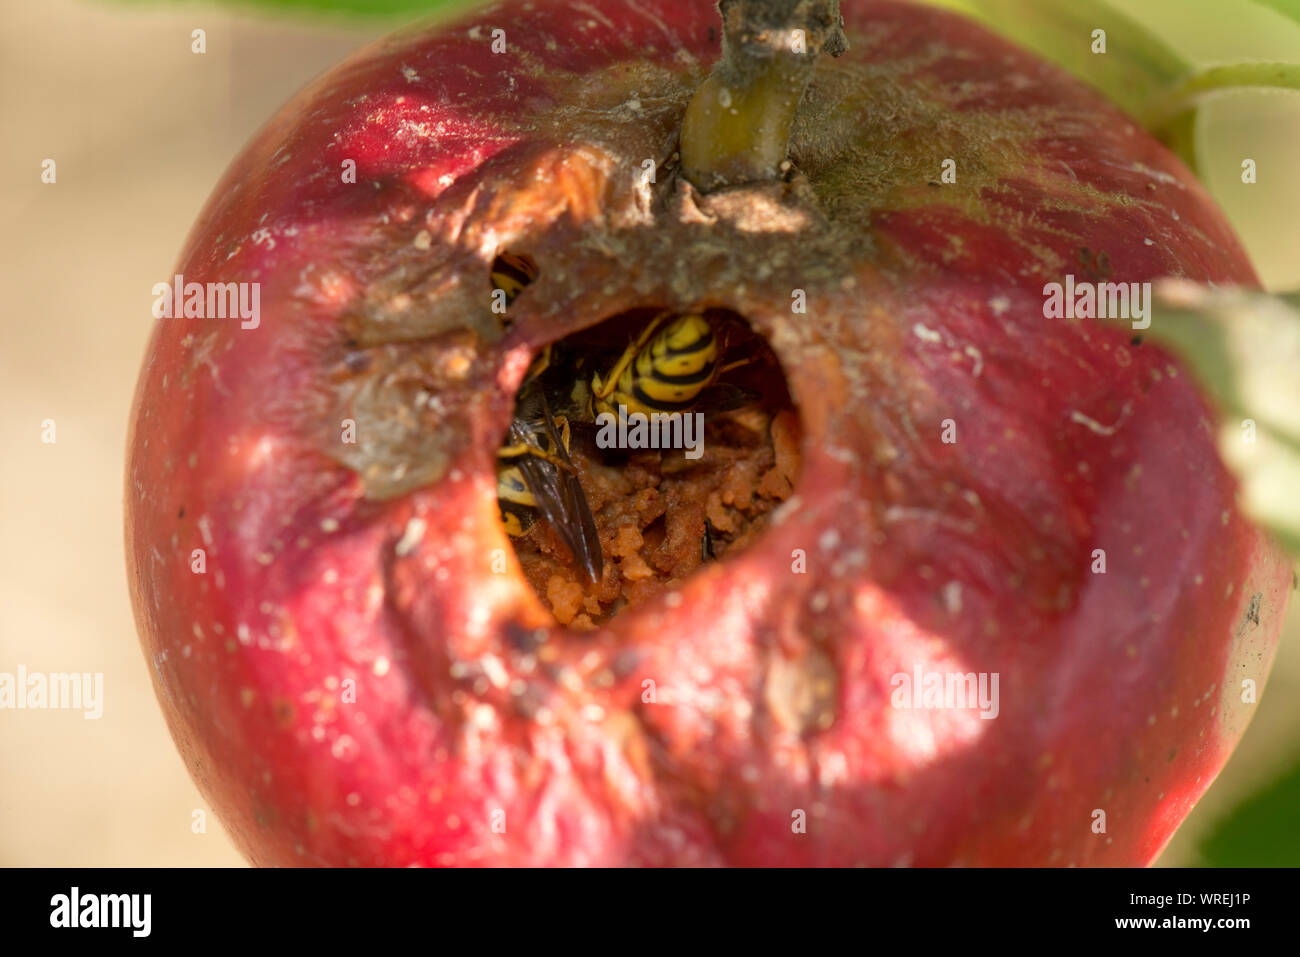 Mature scoperta apple mangiato dall'interno da vespe (Vespula vulgaris) e earwigs (Forficula sp.) Berkshire, Agosto lasciando la pelle mummificati sulle tre Foto Stock